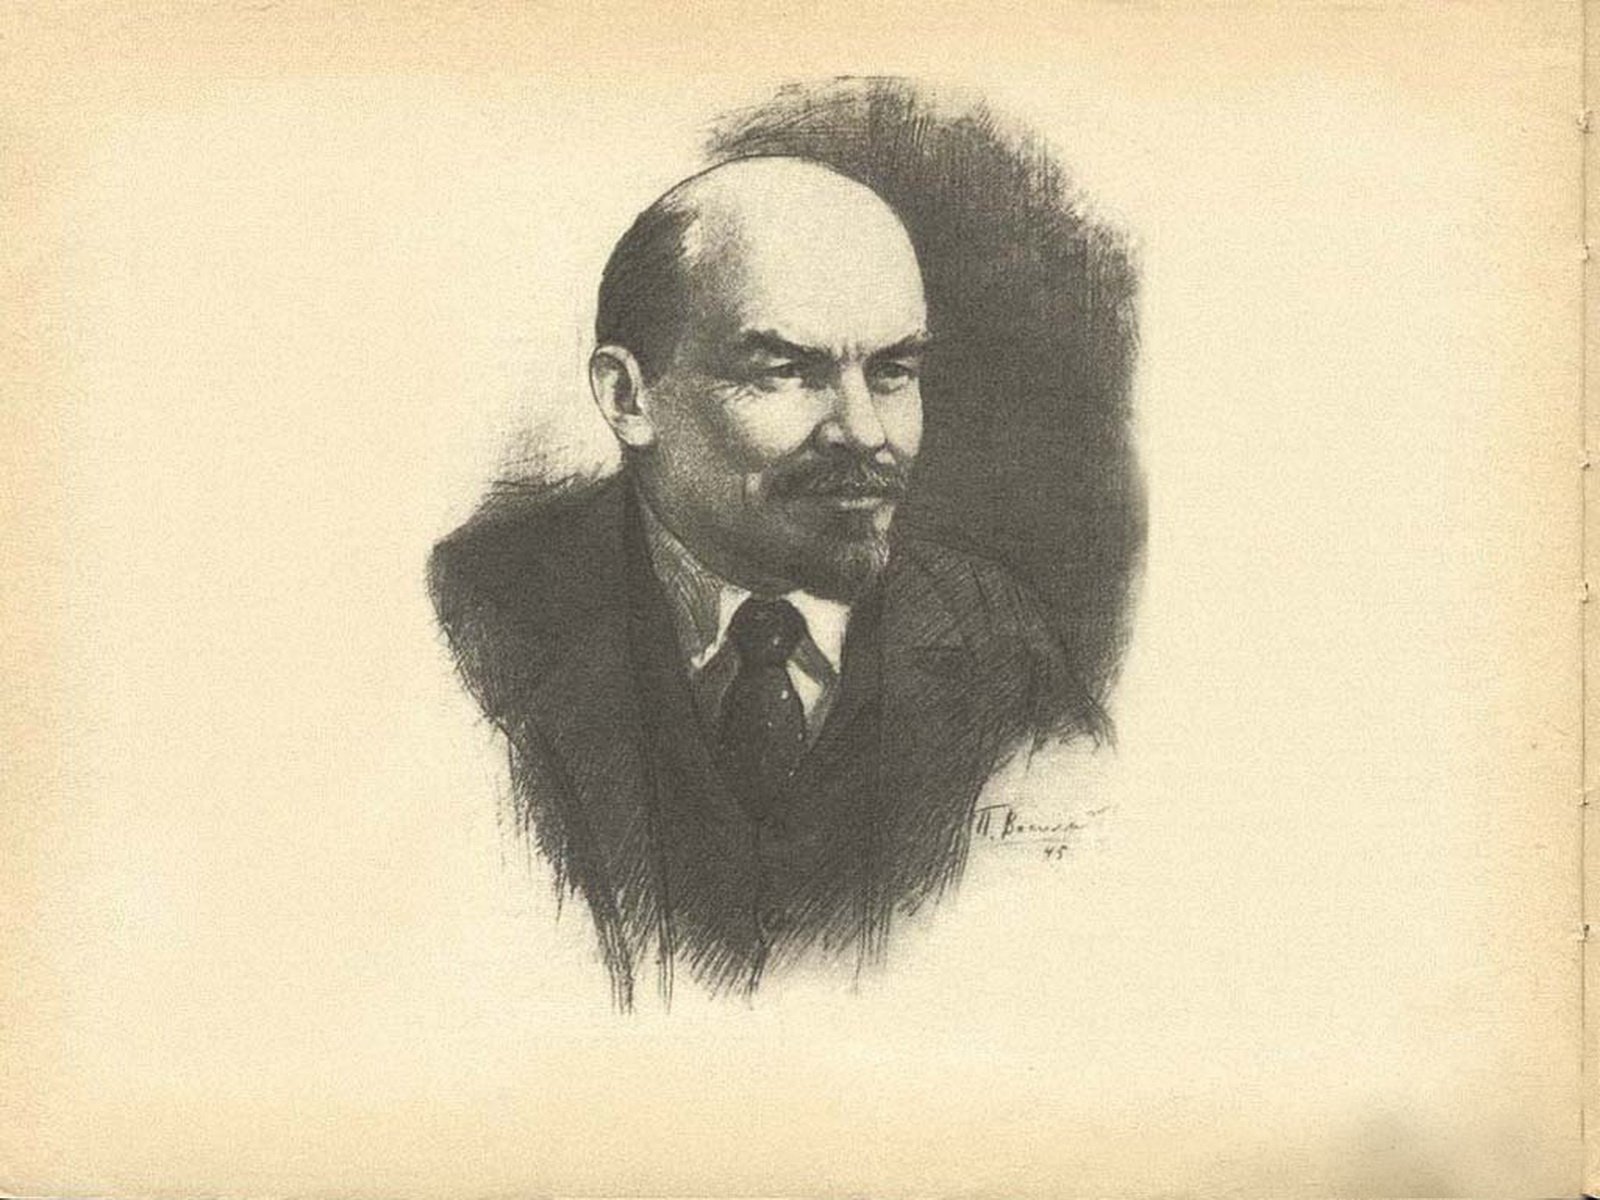 Lenin Wallpaper